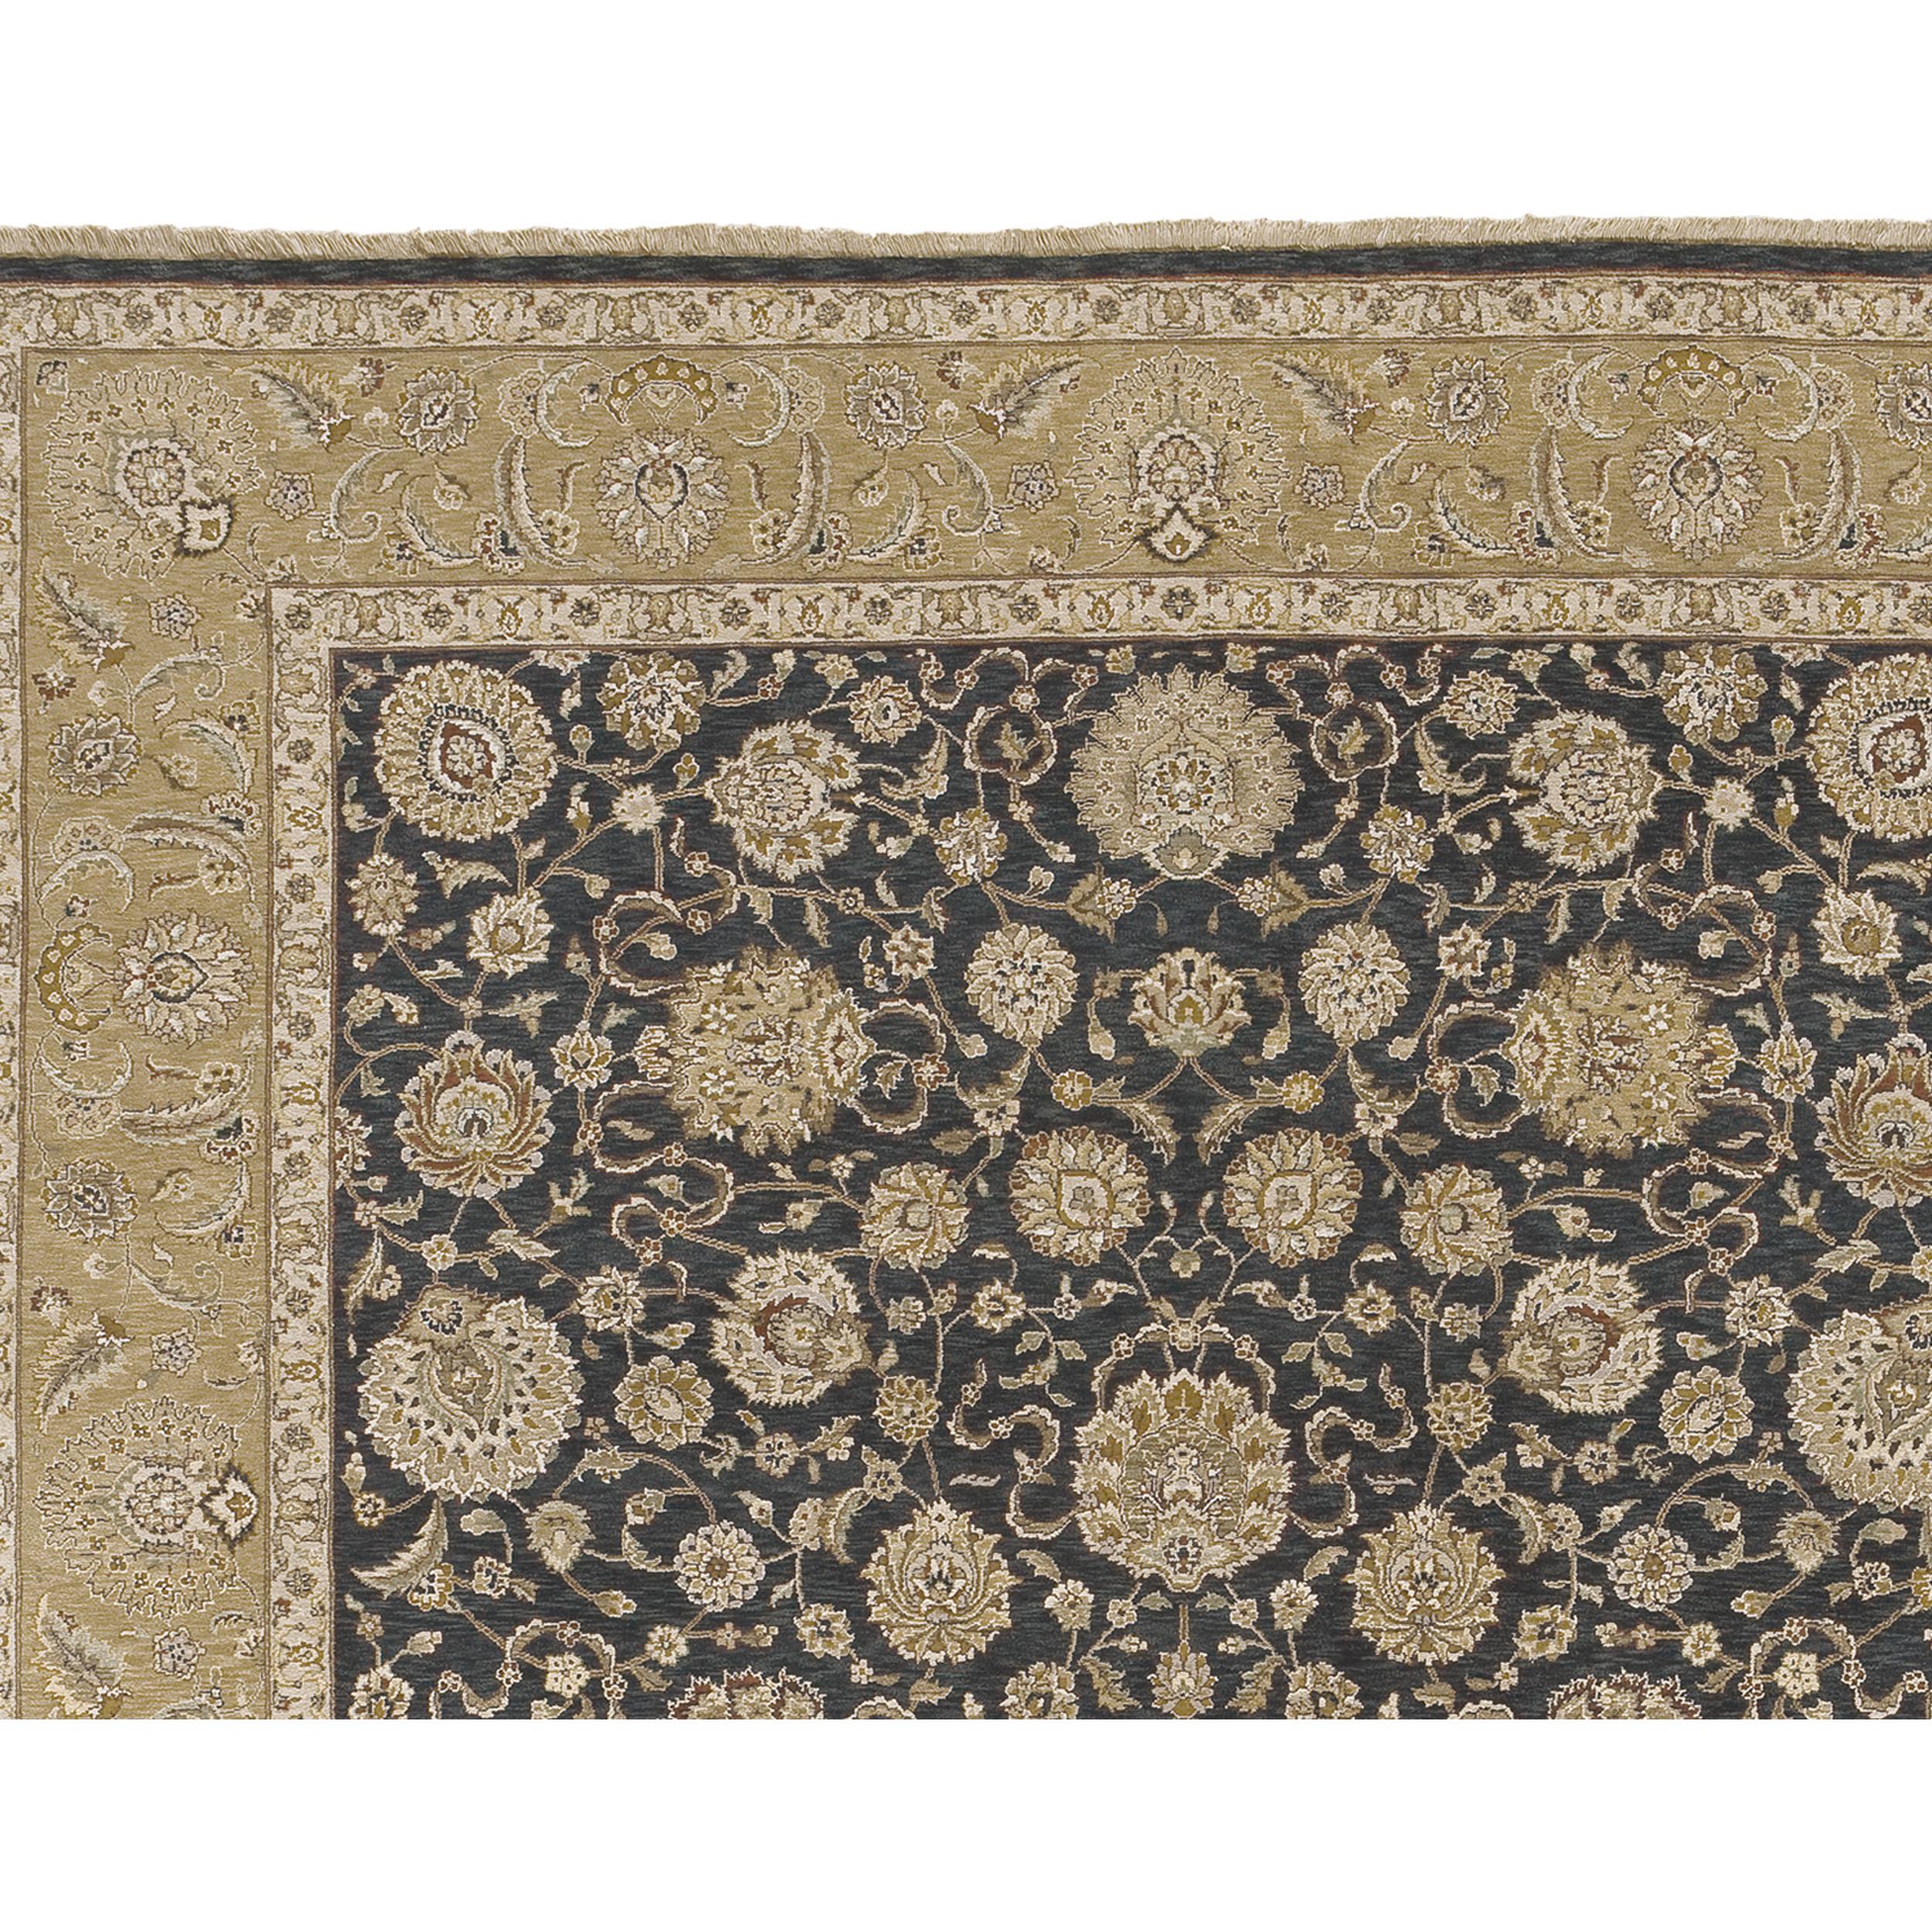 Le design de ce tapis s'inspire d'anciens tapis persans, mais avec une palette de couleurs contemporaines. La principale caractéristique de ce tapis est le remarquable abrash (changement de couleur), une nouvelle technique de tissage entre deux